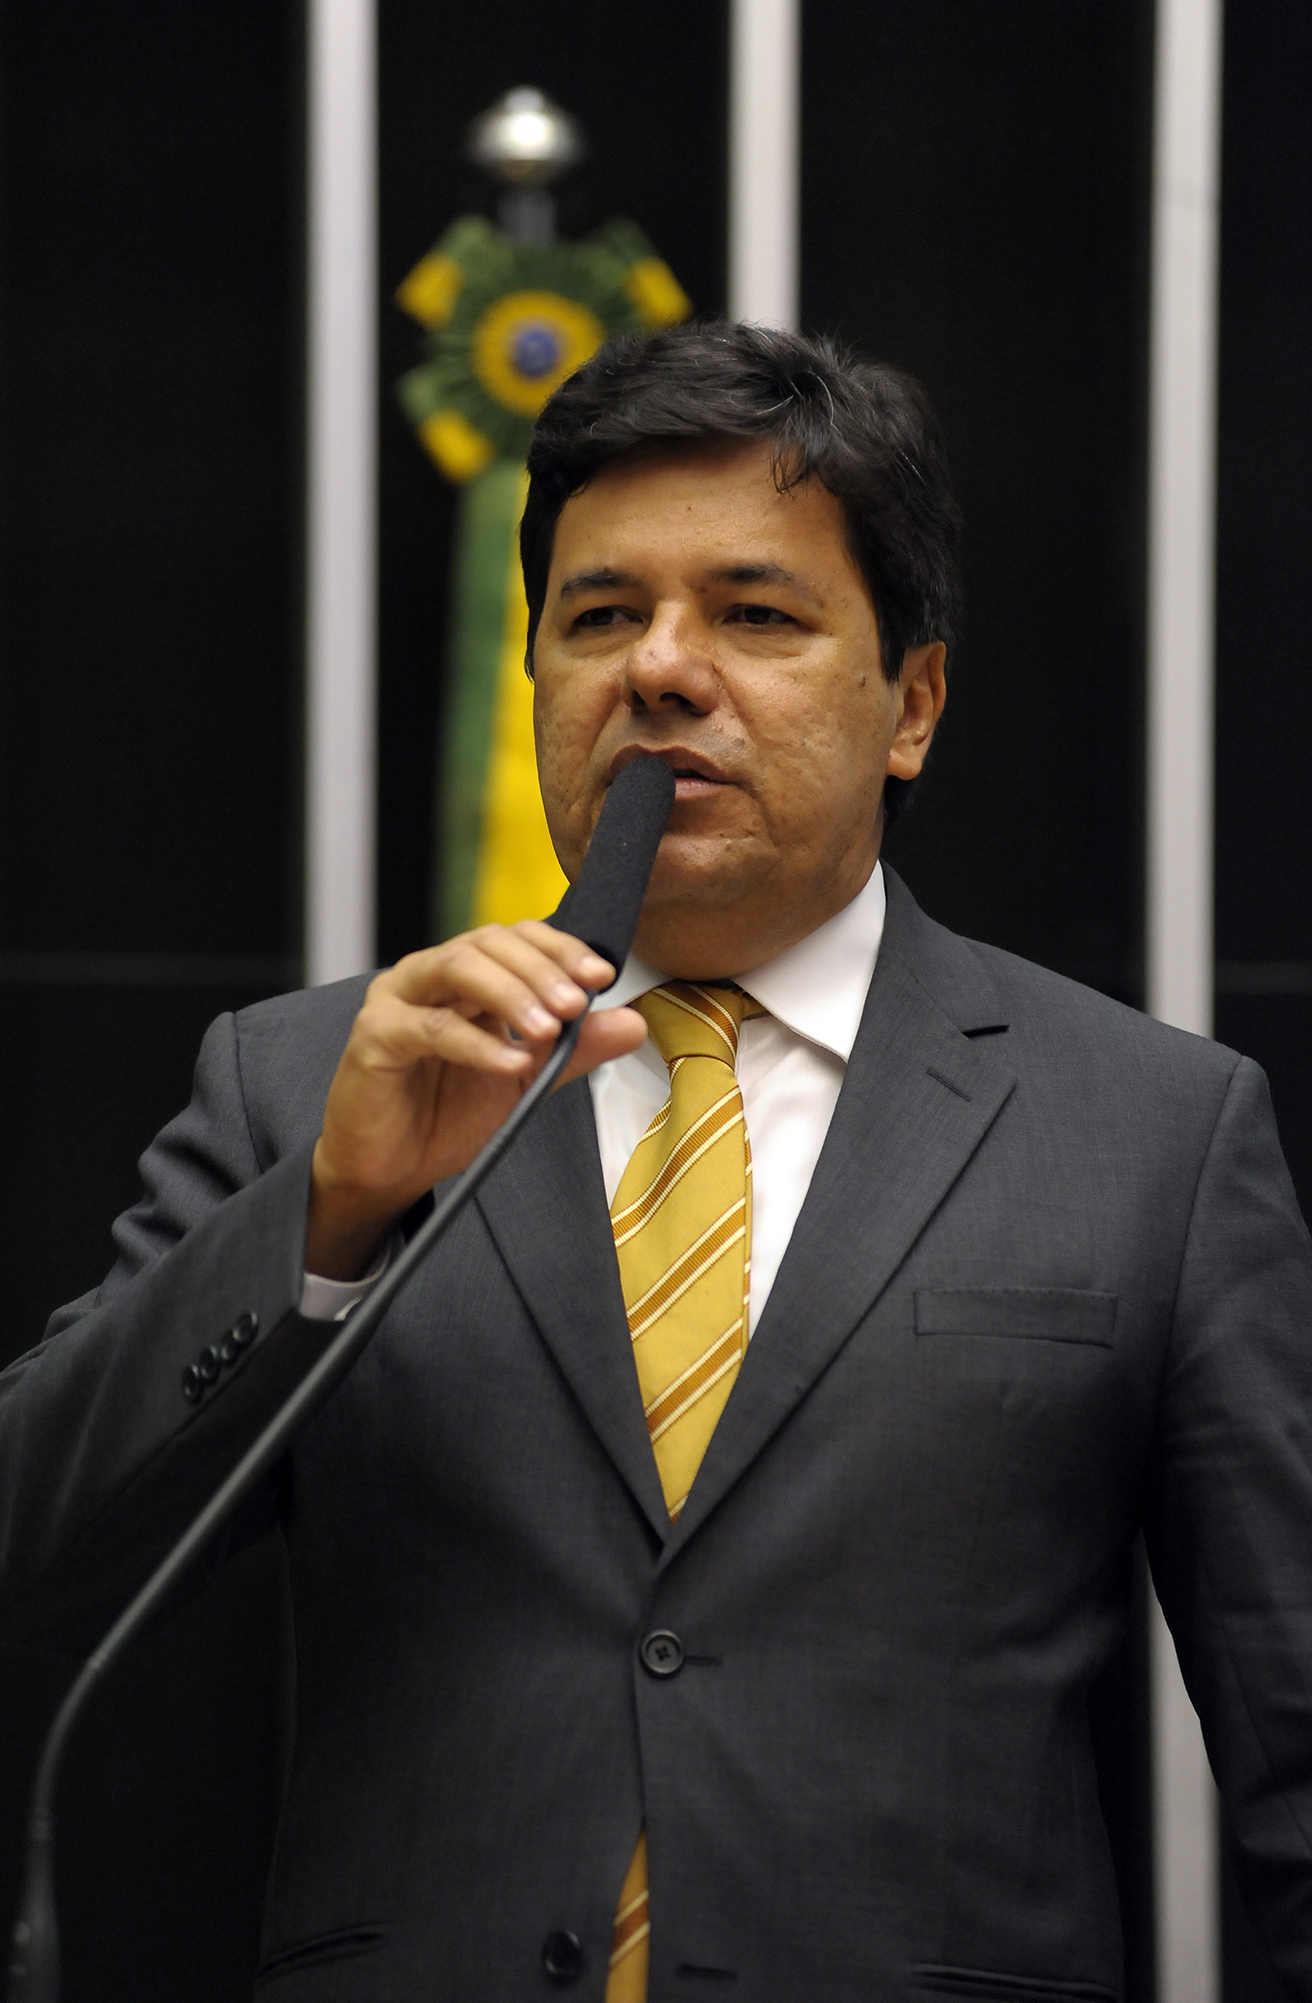 Deputado Mendonça Filho (DEM/PE) solicita convocação do Ministro das Comunicações, Ricardo Berzoini